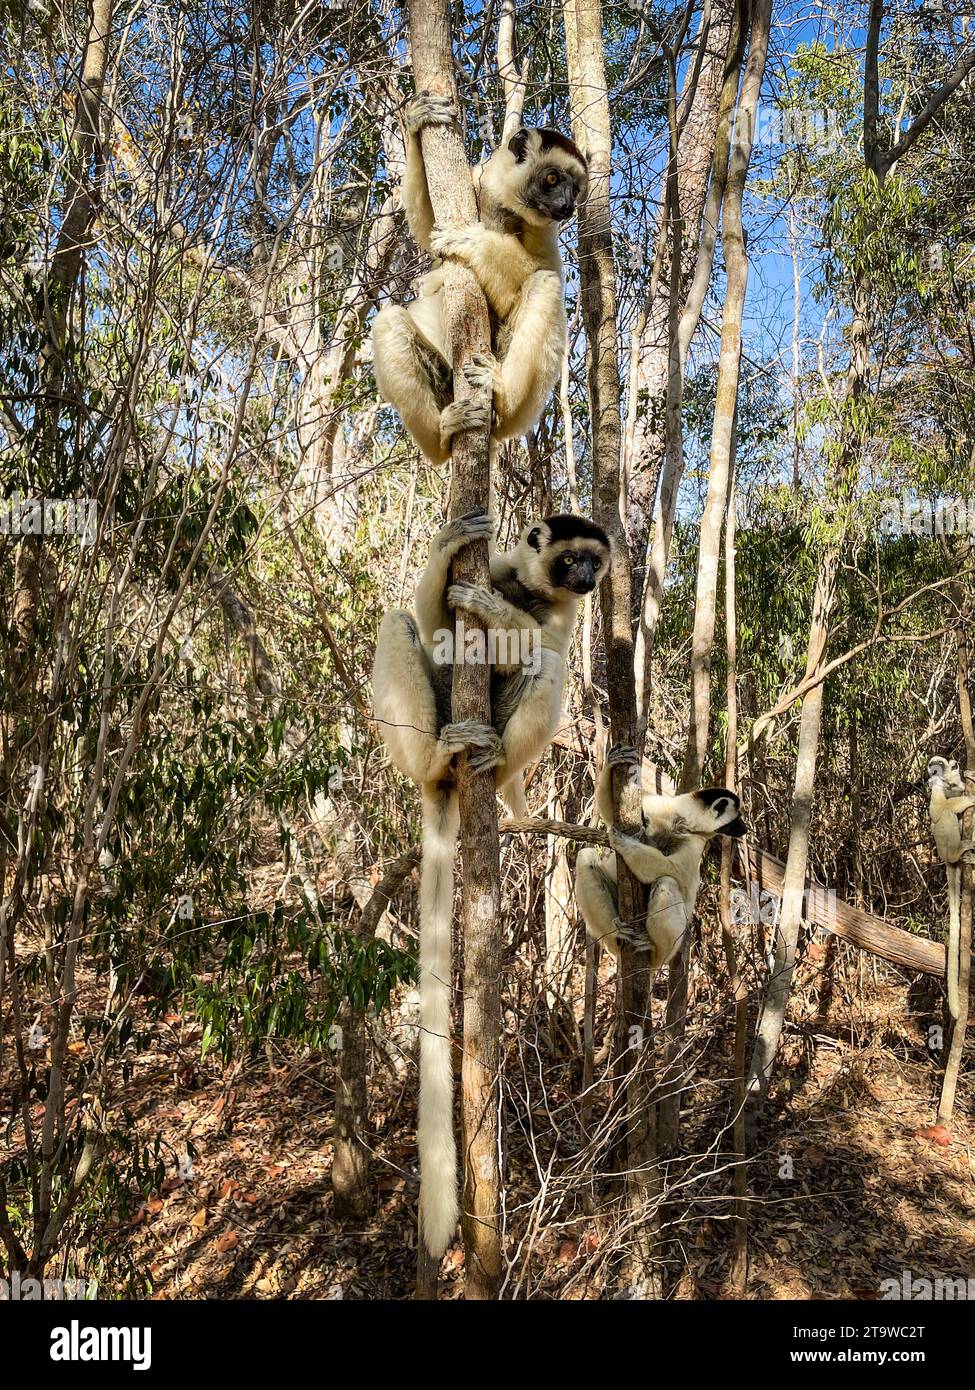 Madagascar, surroundings of Tsimafana, lemur forest Stock Photo